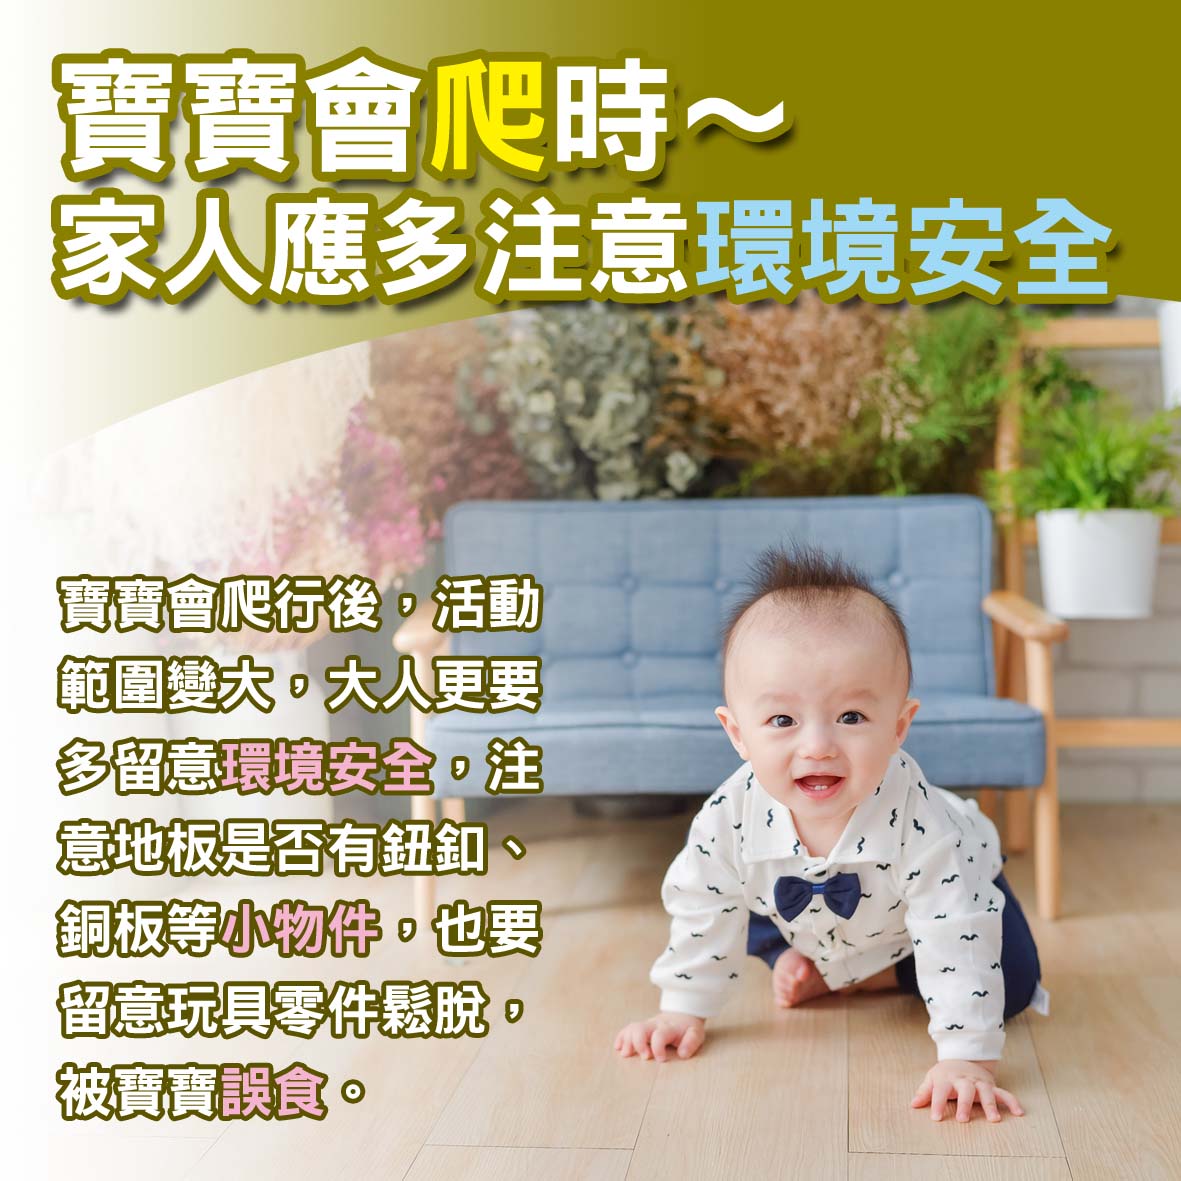 寶寶篇第29週-寶寶會爬時～家人應多注意環境安全文章照片